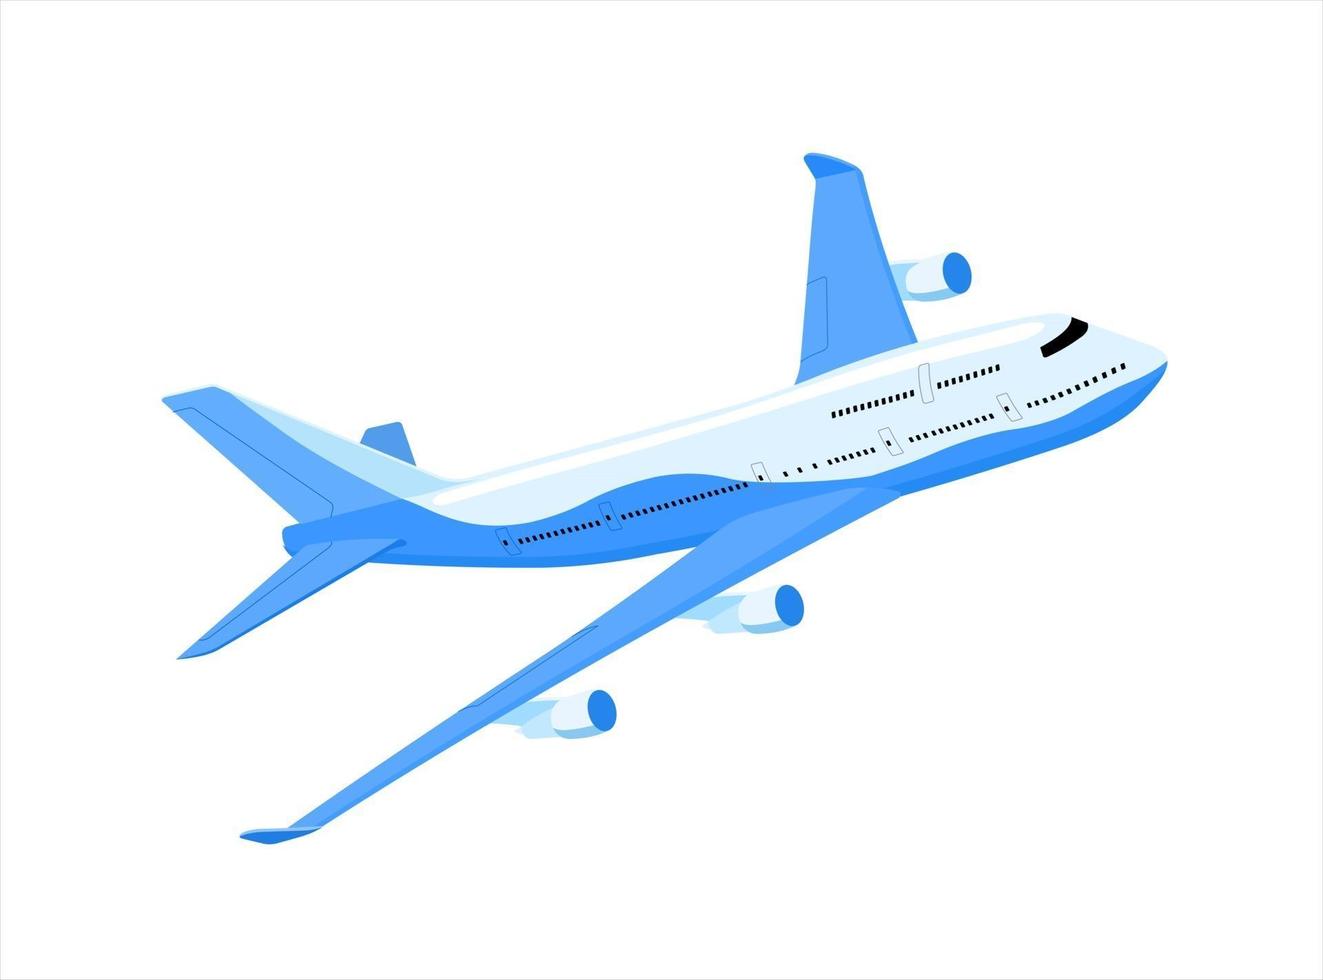 passagerarplanet lyfter i en vinkel. flygplan flygning framåt i luften. passagerartransport. isolerade vektorillustrationer på vit bakgrund vektor